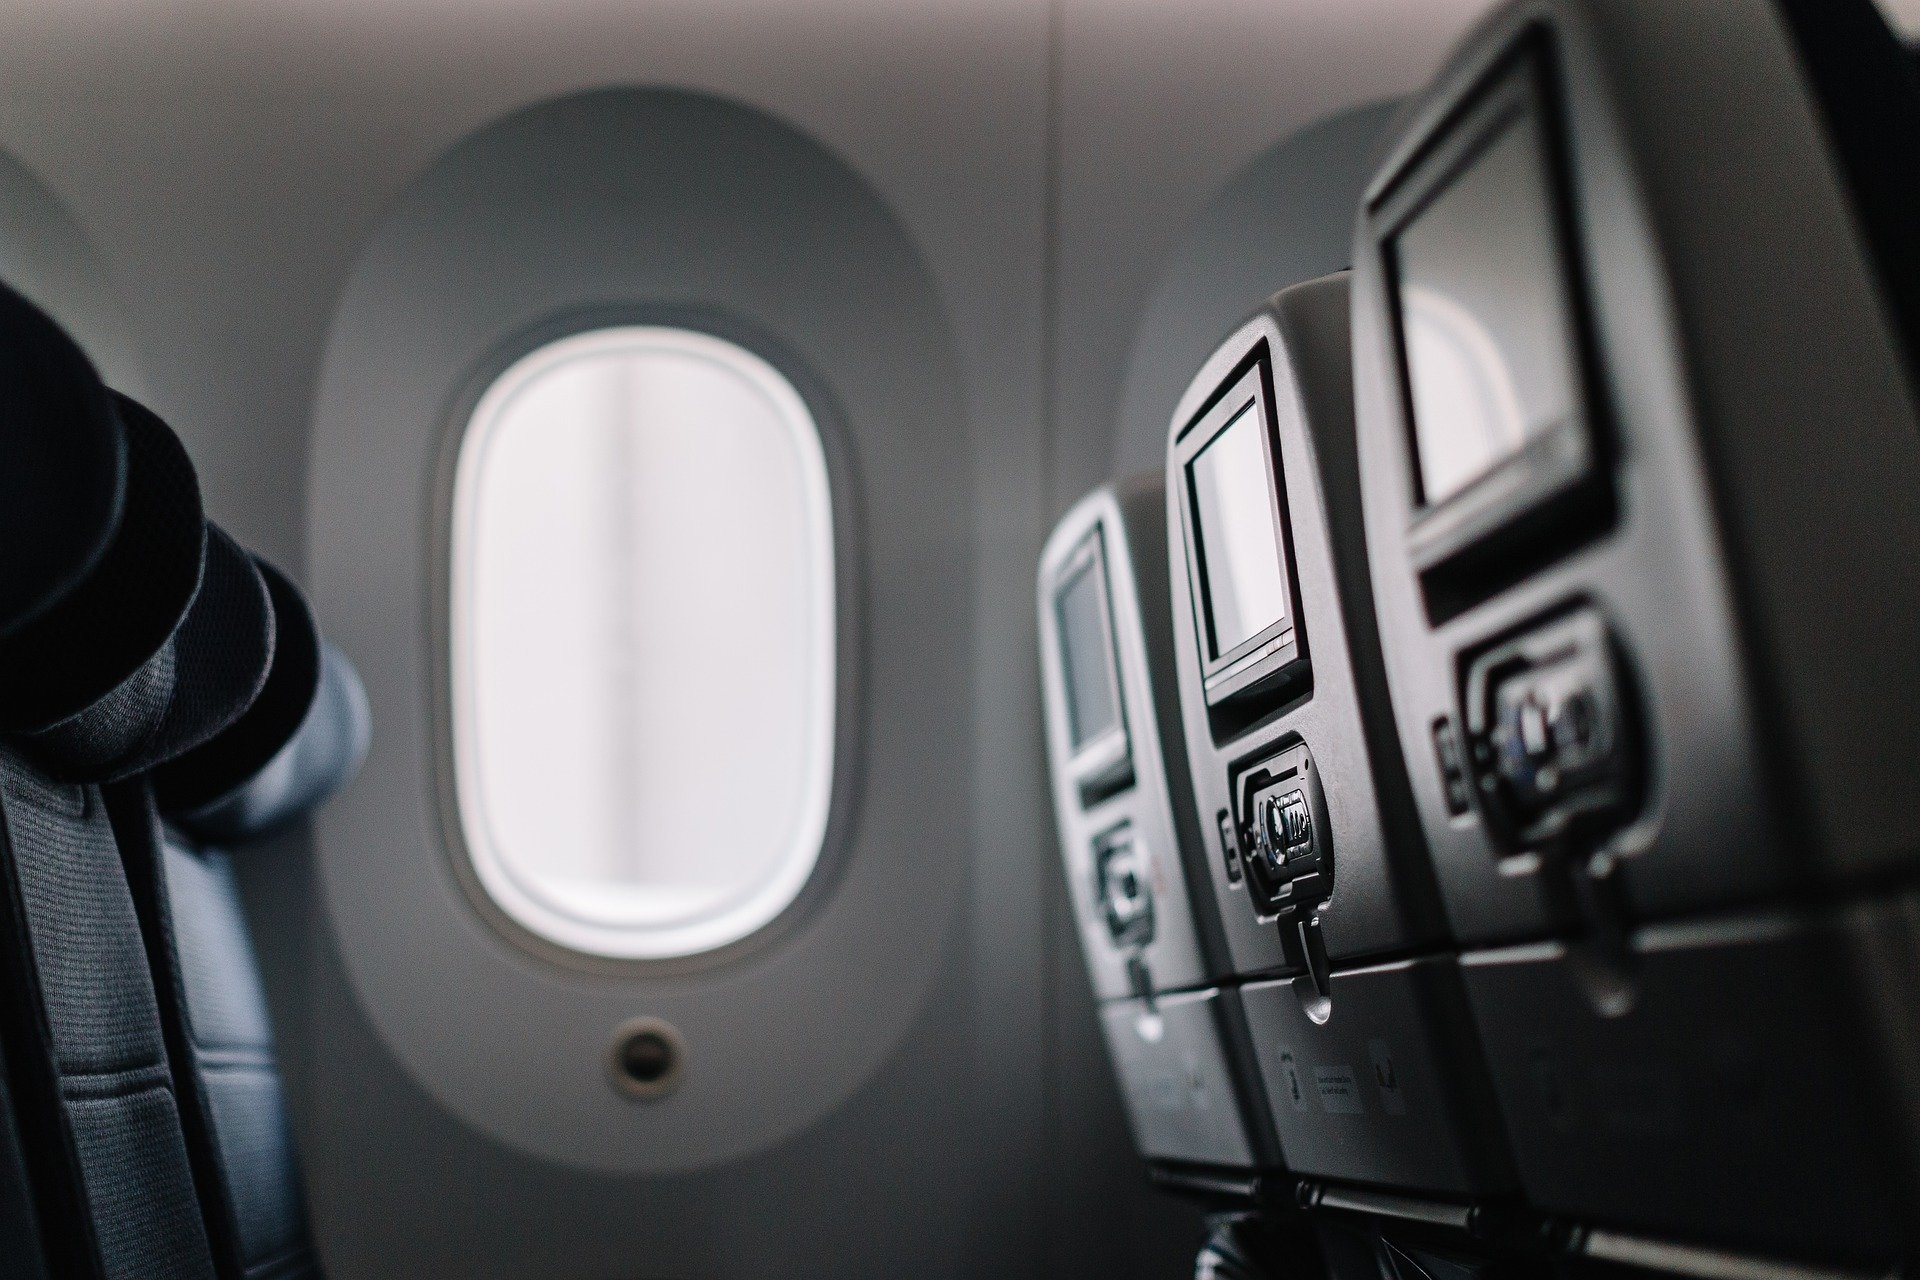  В самолет не зайти даже с билетом: авиакомпании придумали хитроумную ловушку для пассажиров 